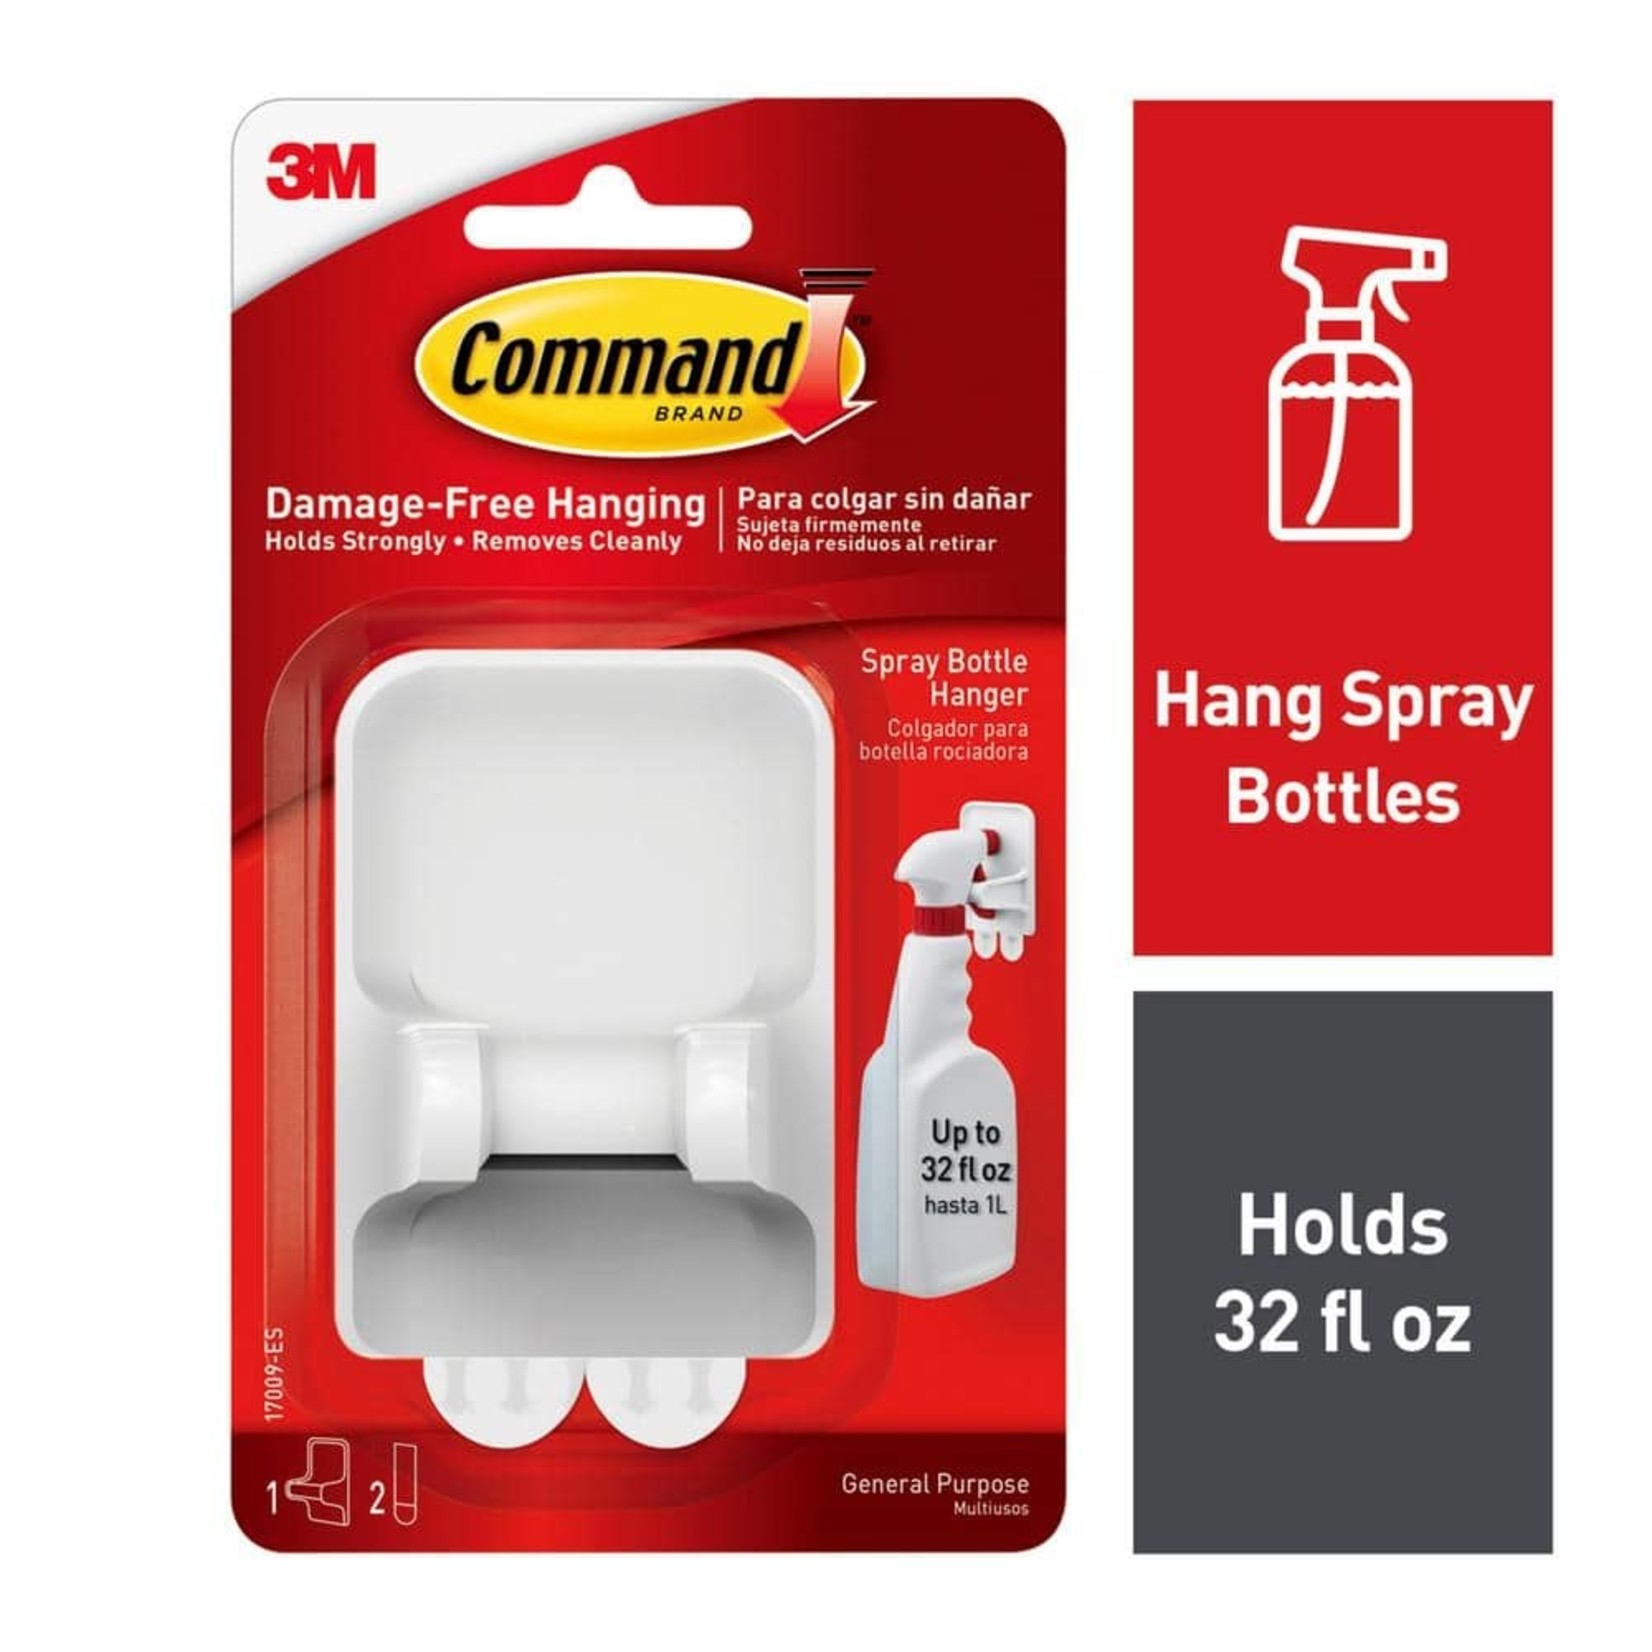 Command Brand - spray Bottle Hanger